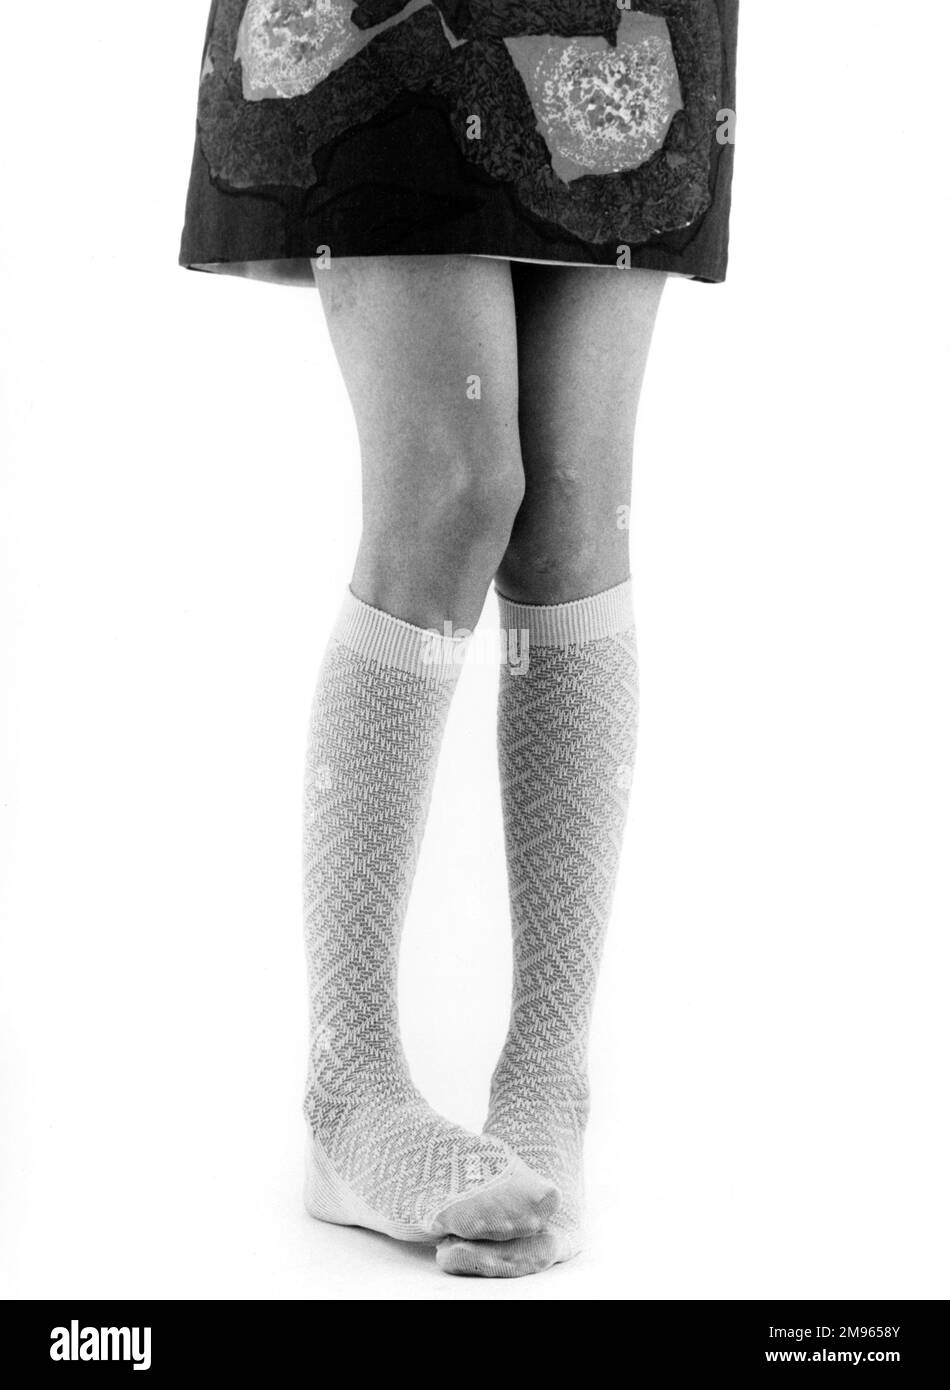 Chaussettes hautes Banque d'images noir et blanc - Alamy